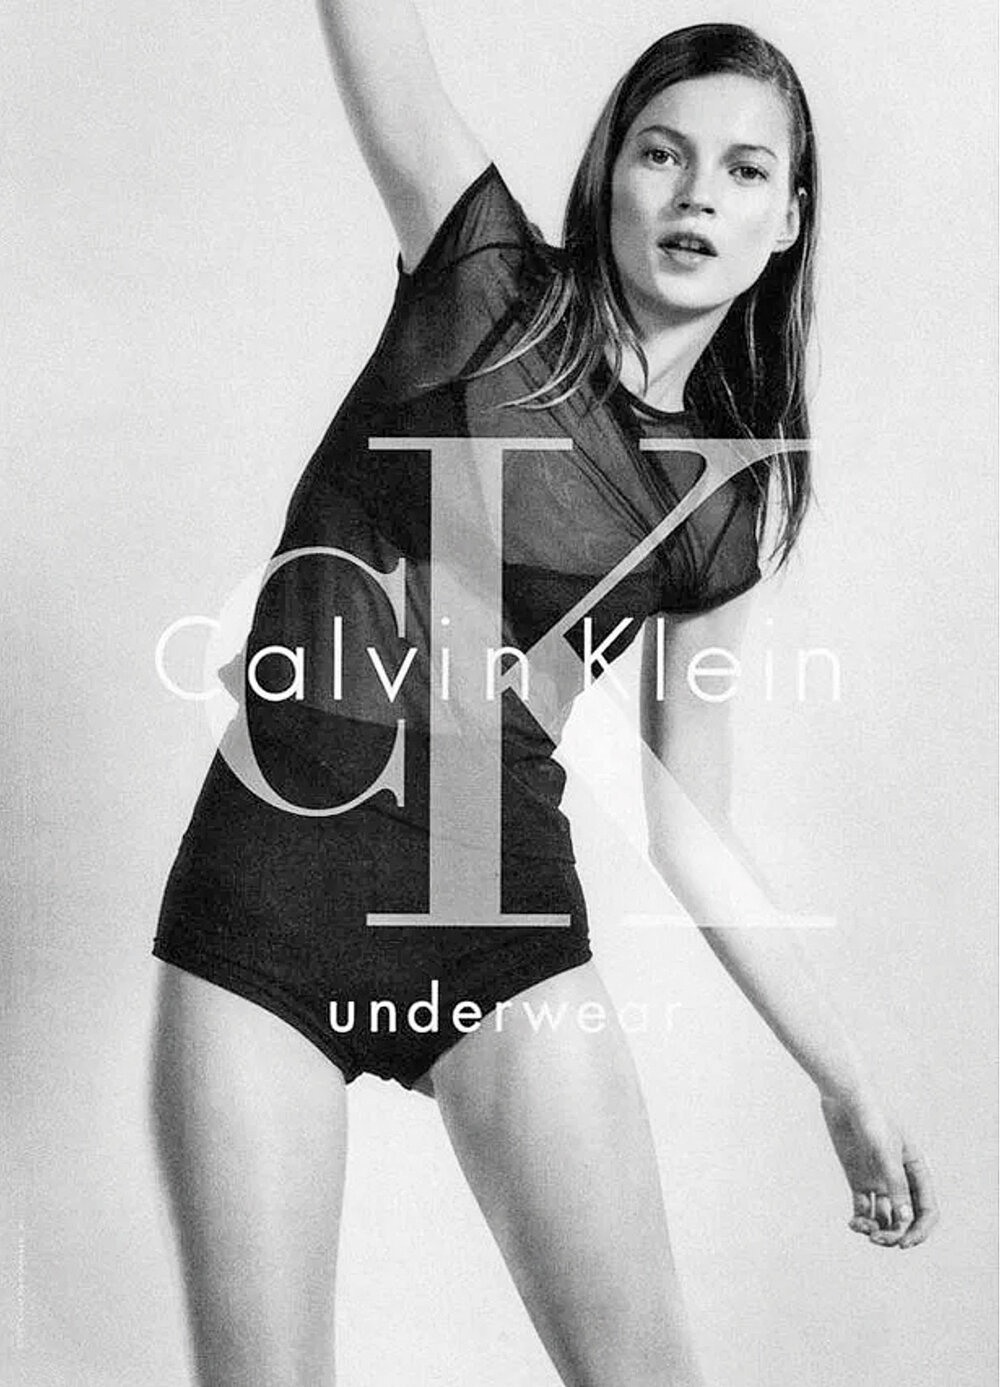 A los 17, la modelo se convirtió en la cara de Calvin Klein, realizando varias de sus campañas más icónicas. AFP